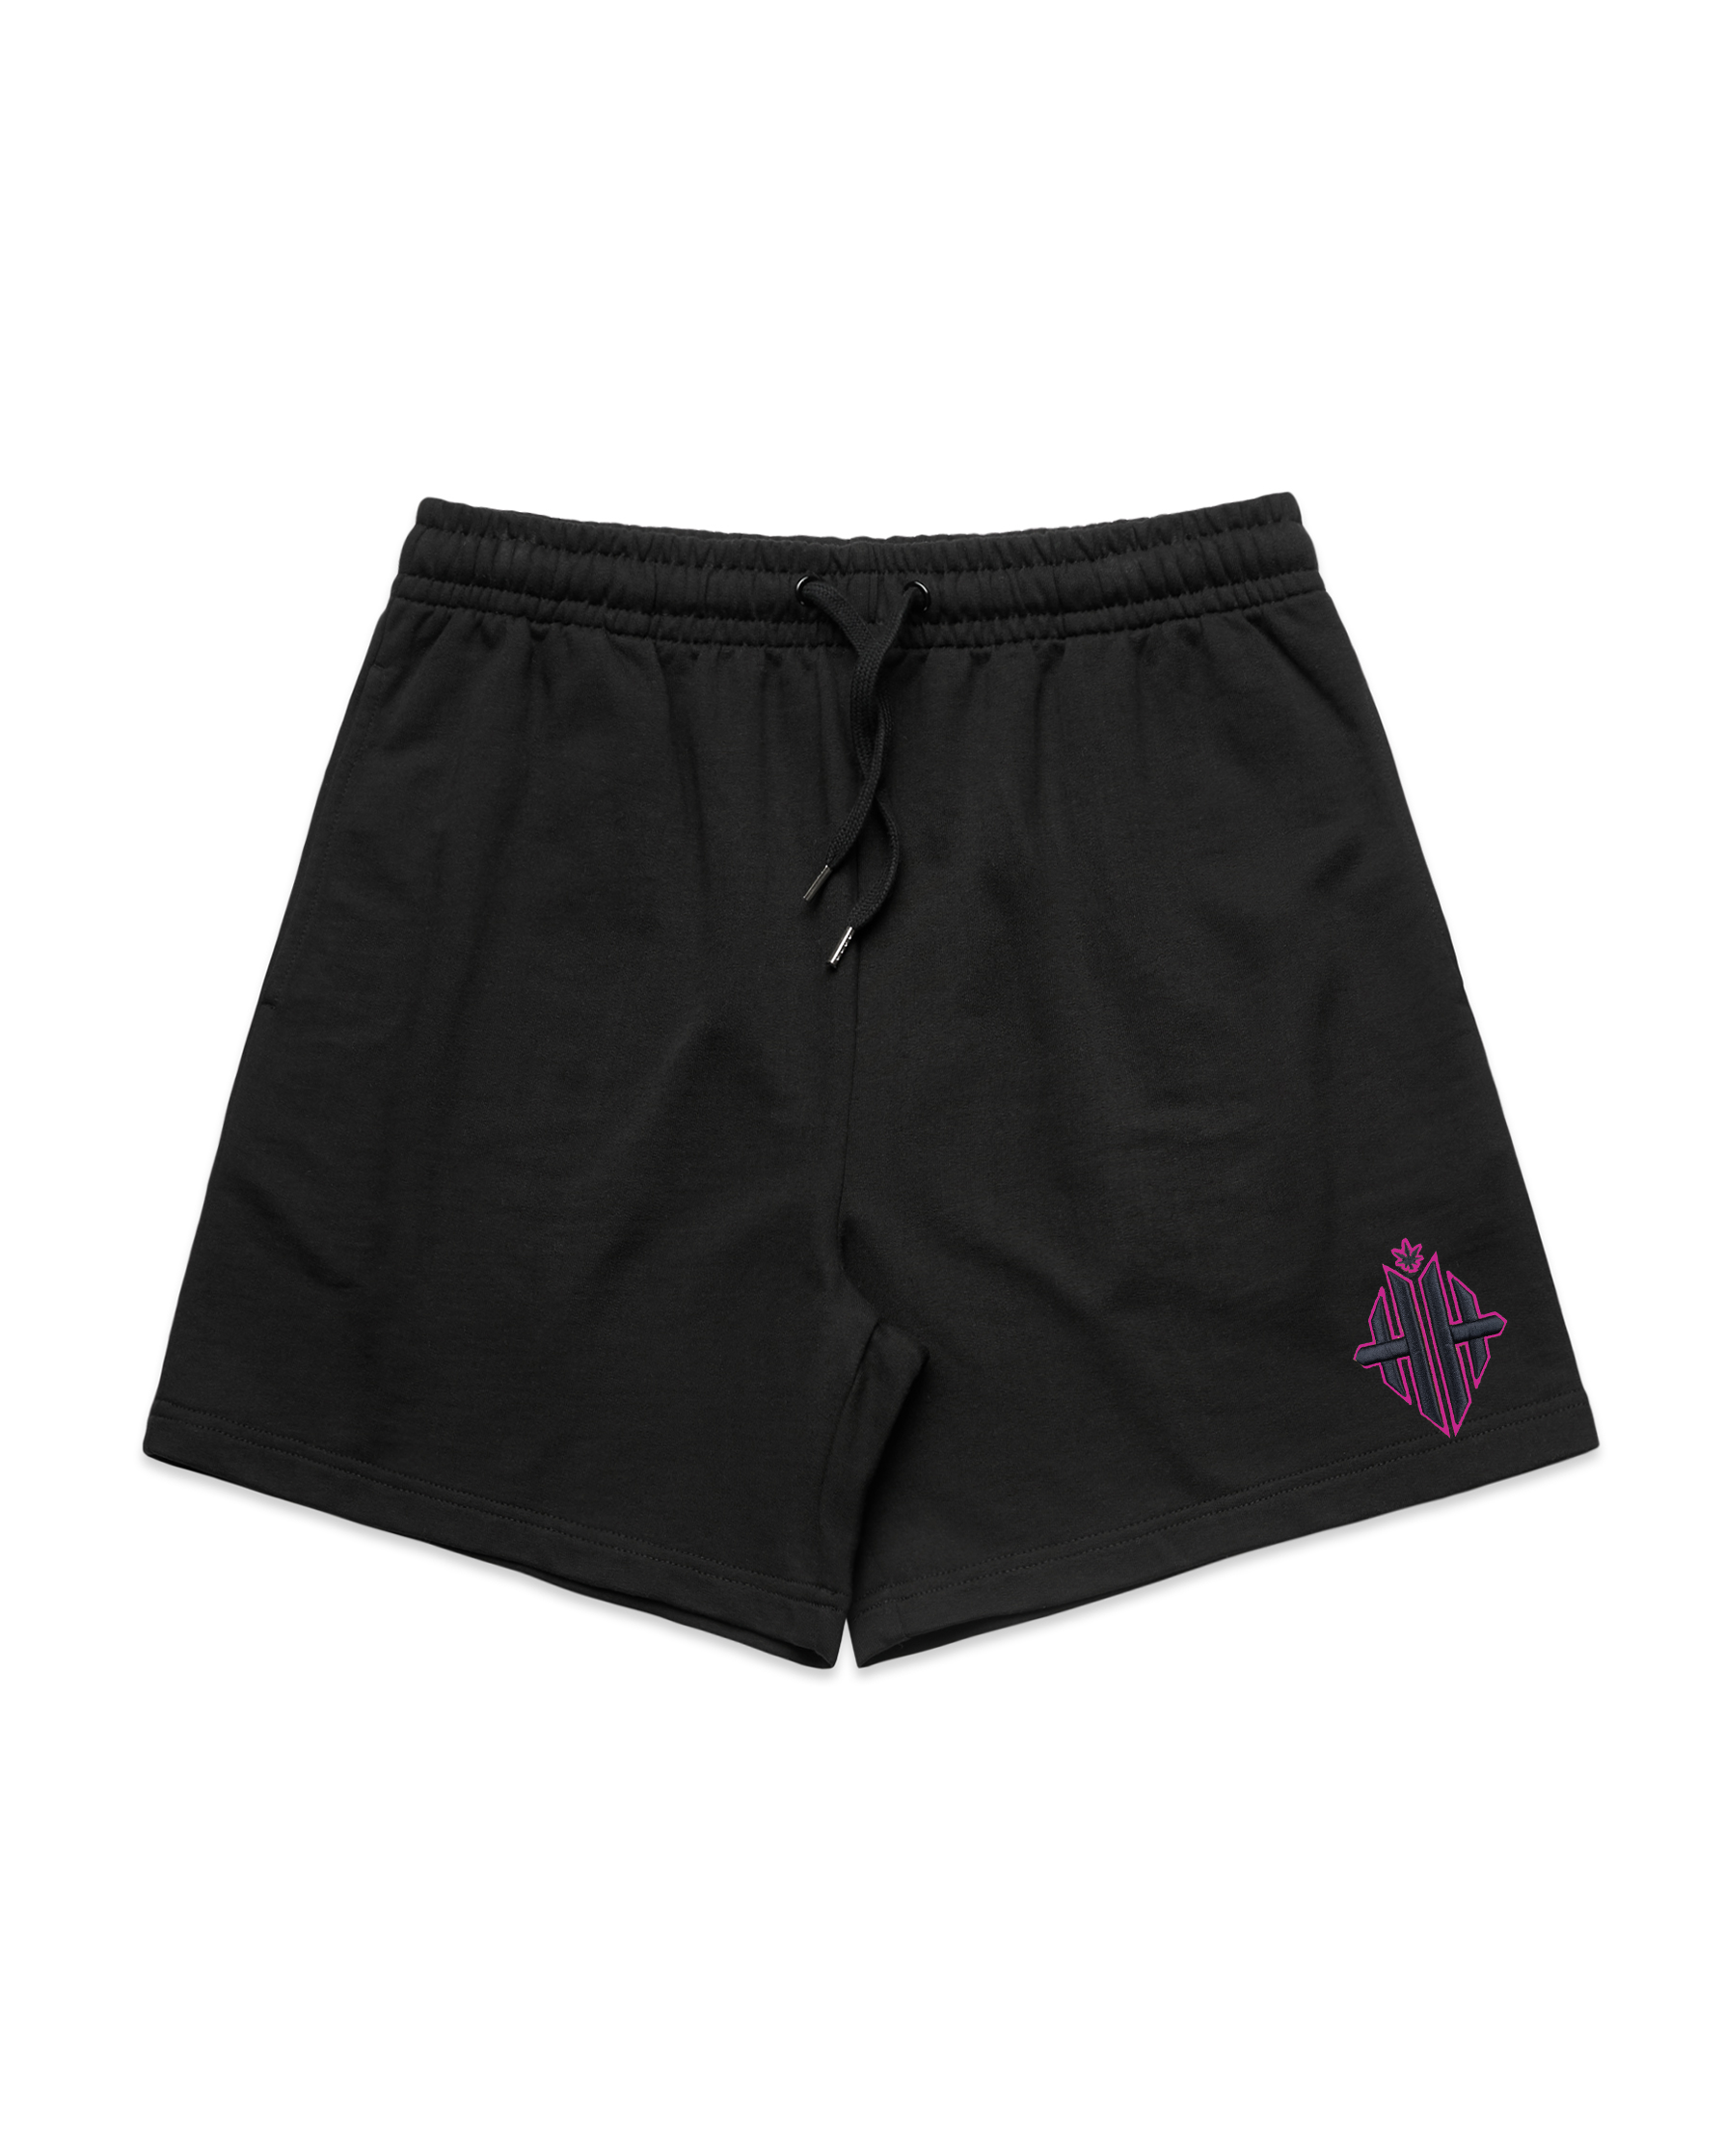 Herbgal Monogram Shorts - Black/Pink